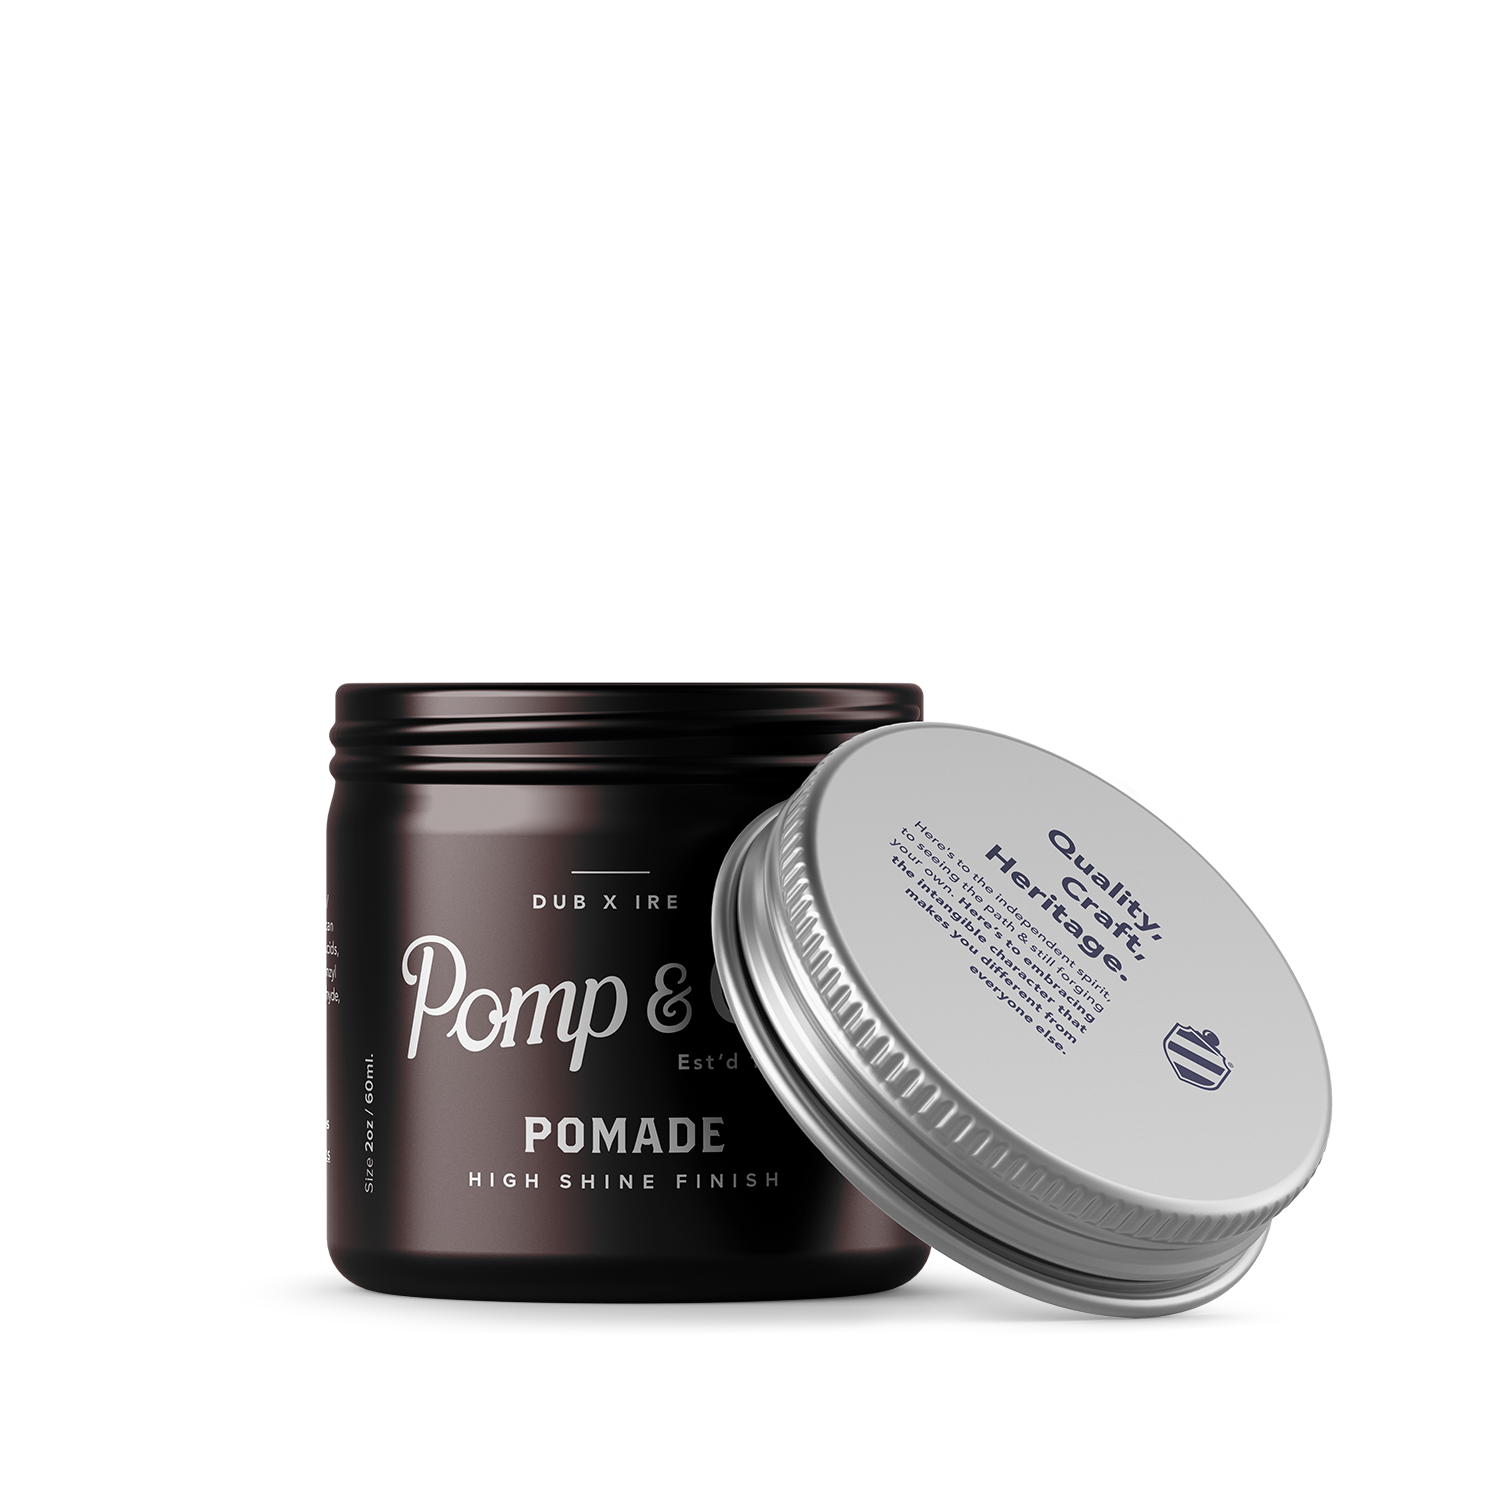 Pomade 60ml for Men - €21.00 | Pomp & Co.